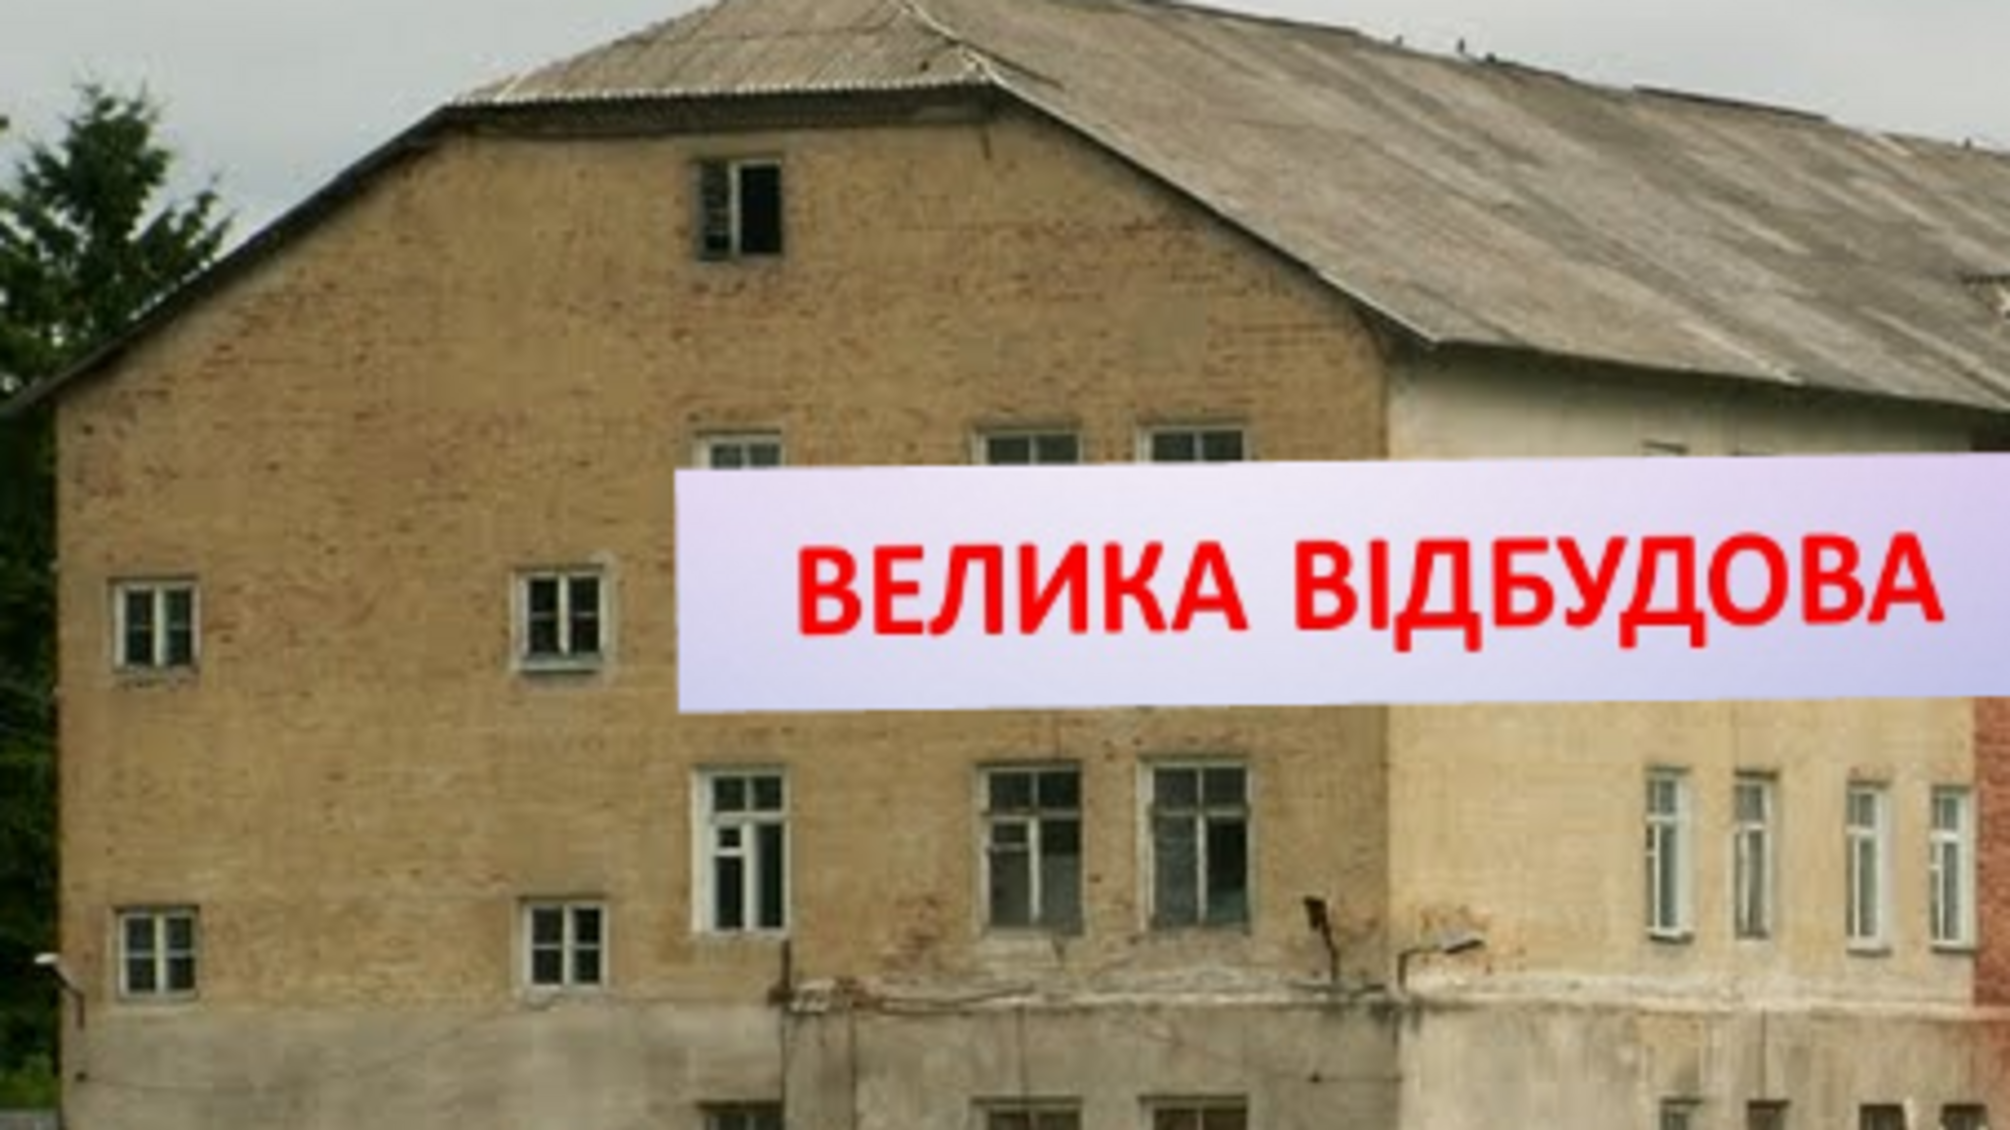 Житомирская ОВА реконструирует казарму в Овруче под жилье за счет Фонда восстановления: квартиры выйдут по 87,5 тысячи долларов